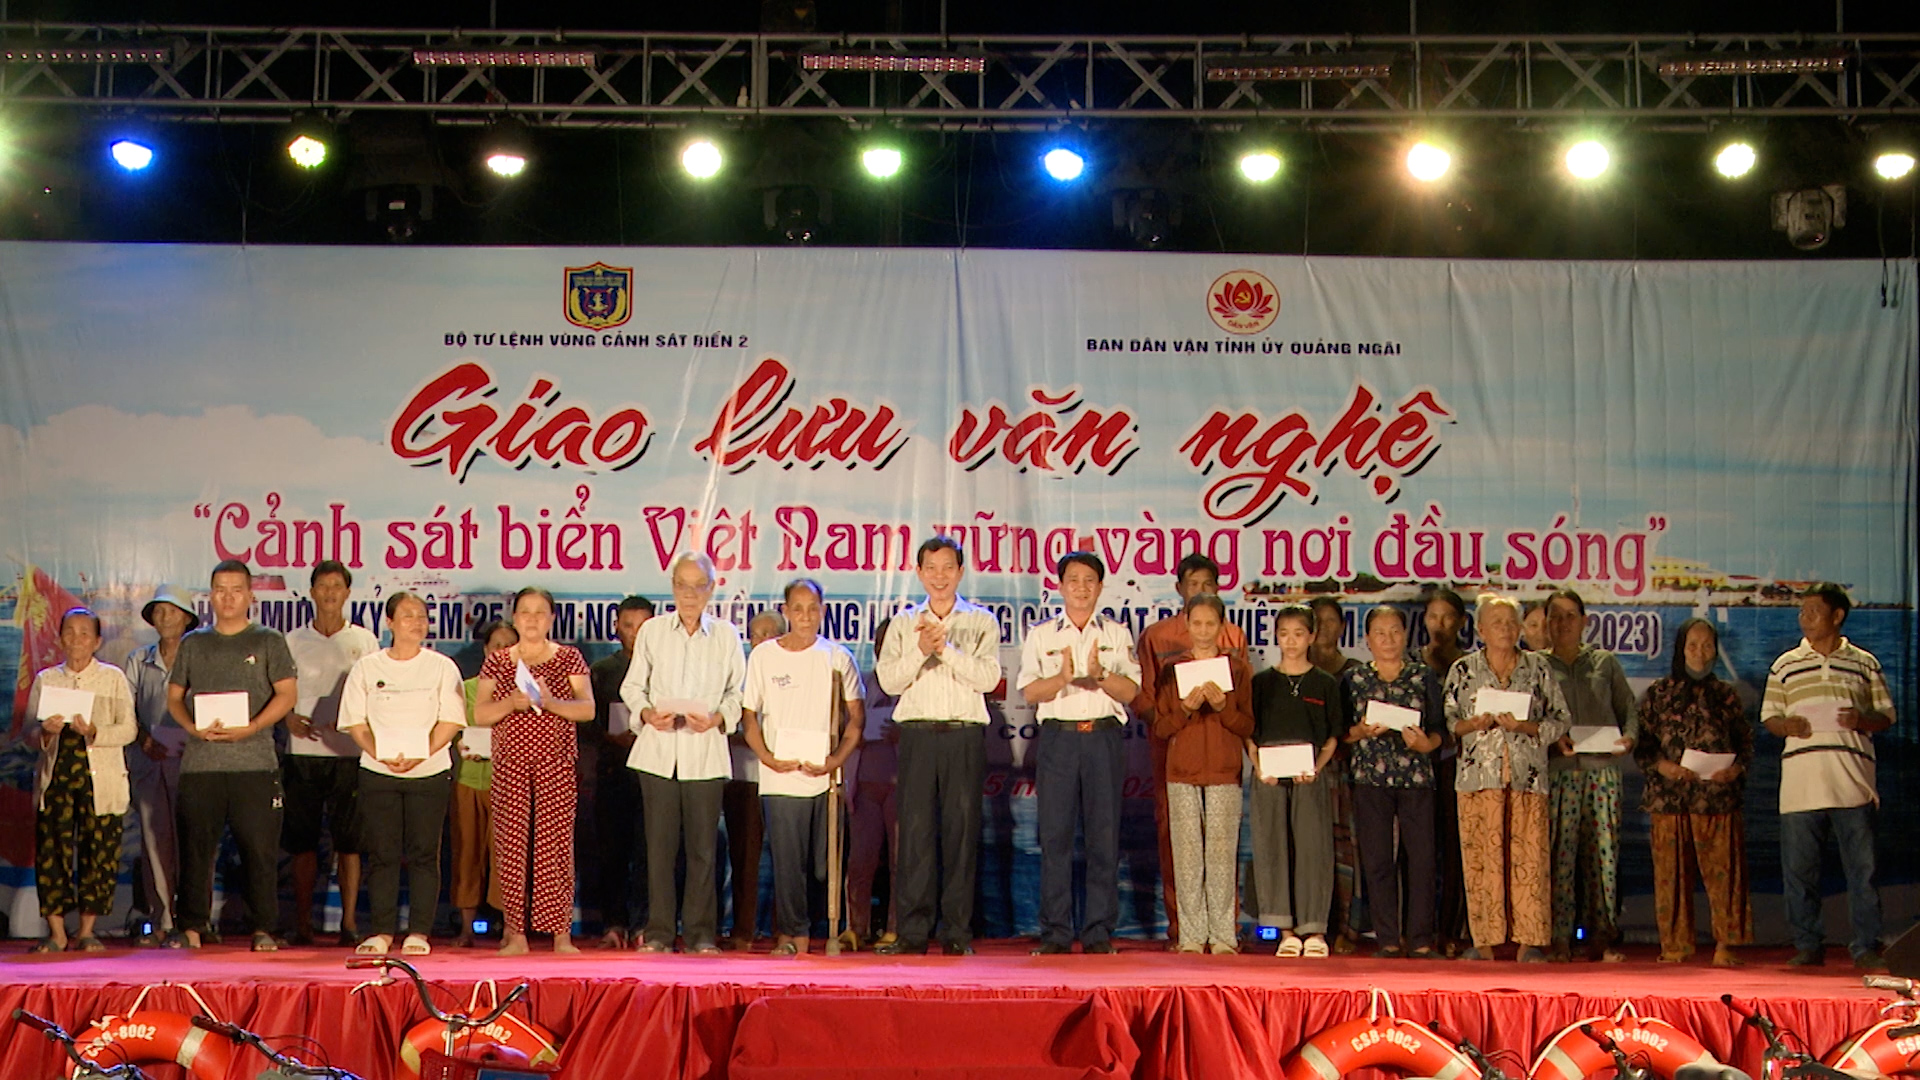 Chương trình giao lưu văn nghệ “Cảnh sát biển Việt Nam vững vàng nơi đầu sóng”